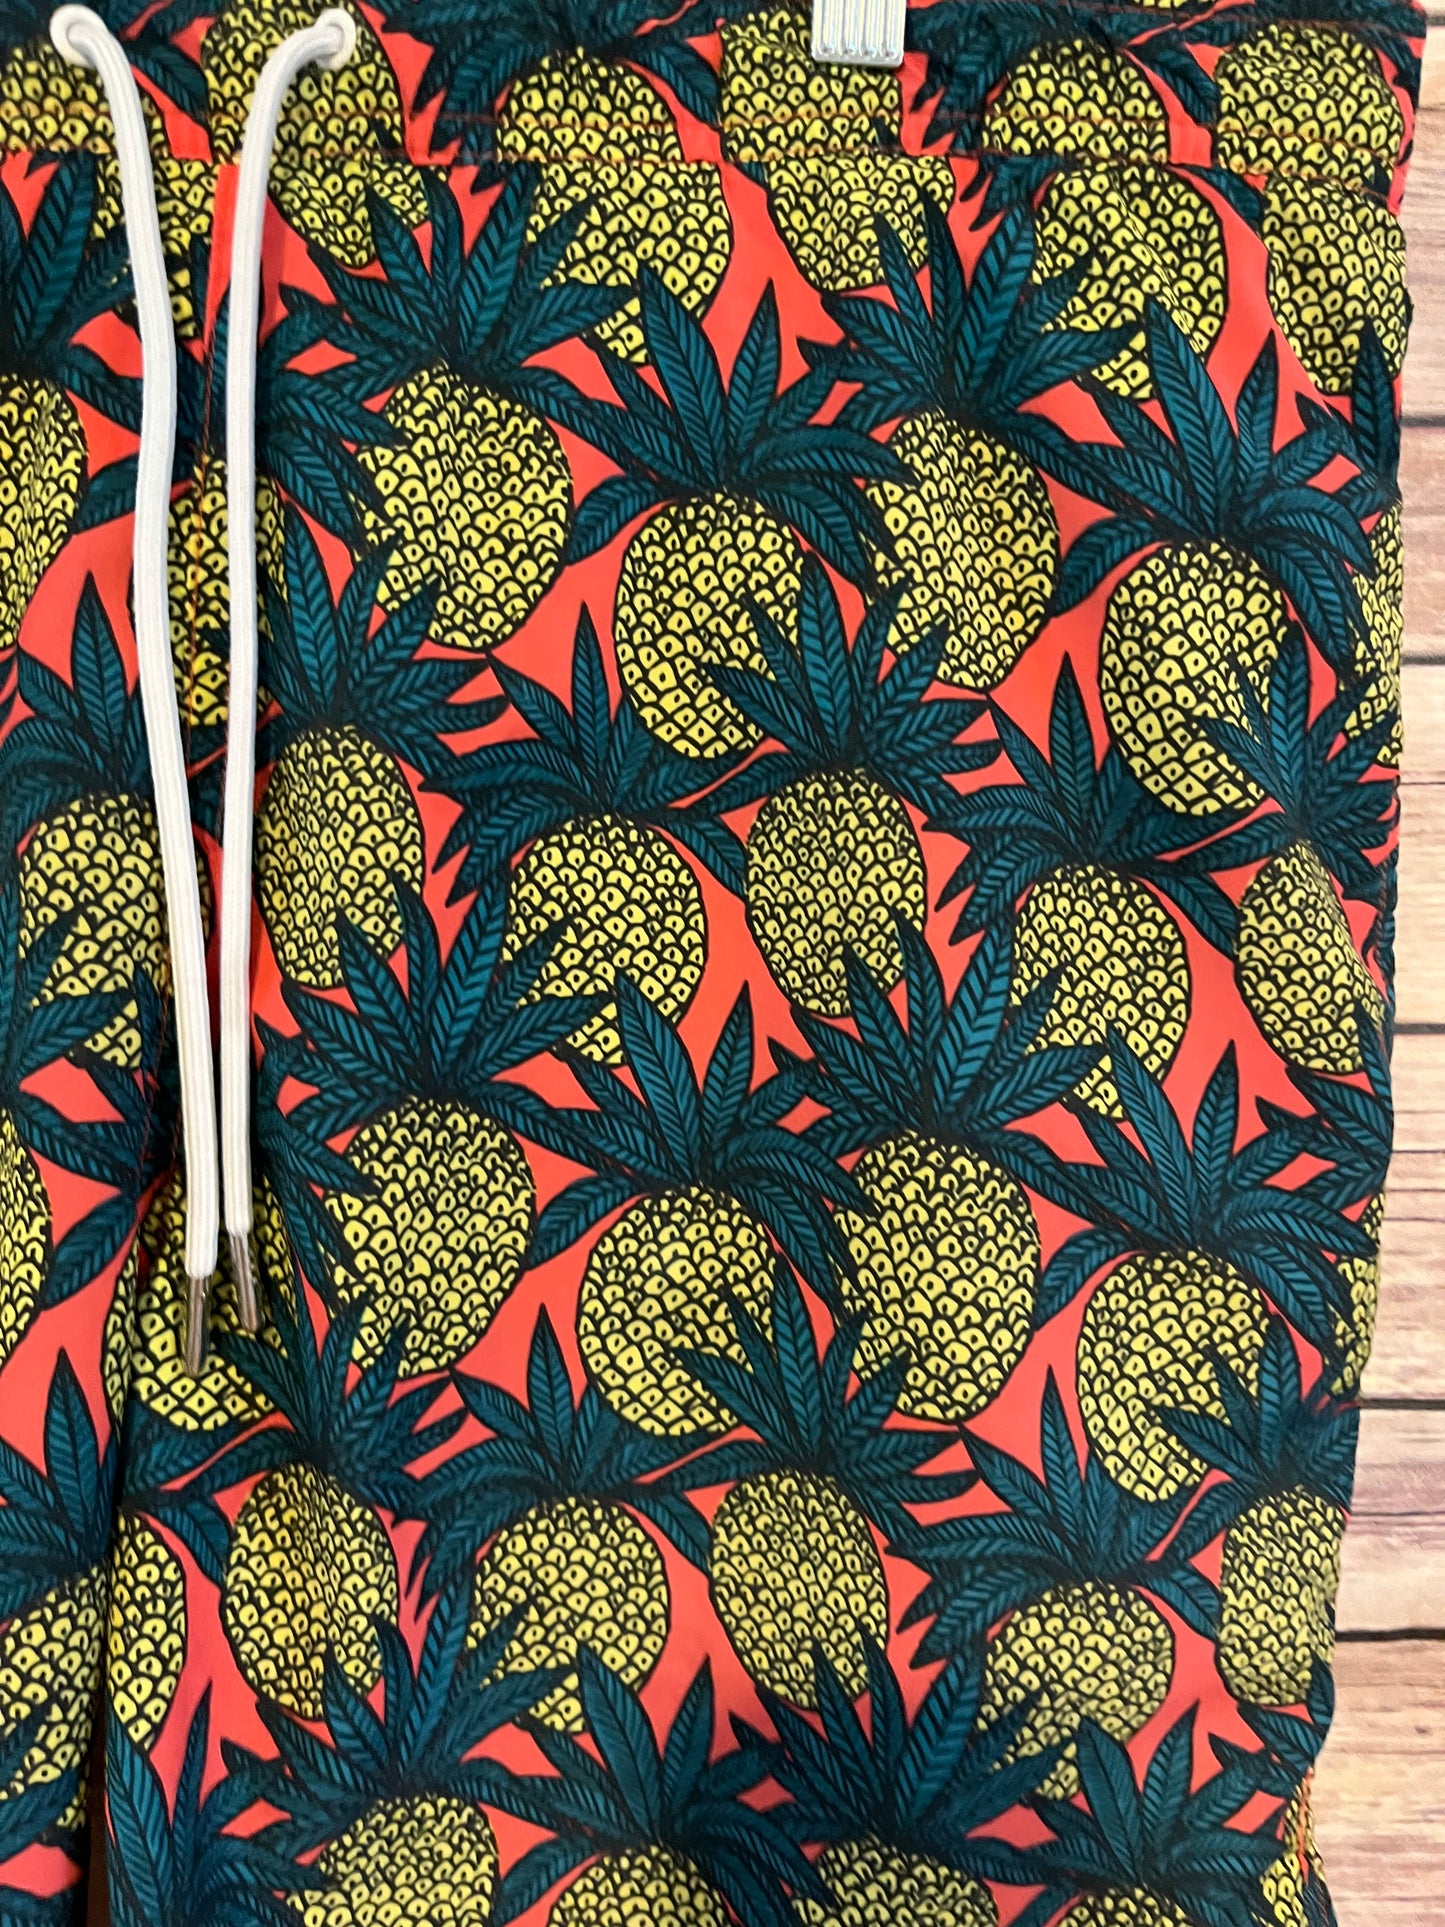 Bonbos Pineapple Swimtrunk size Medium